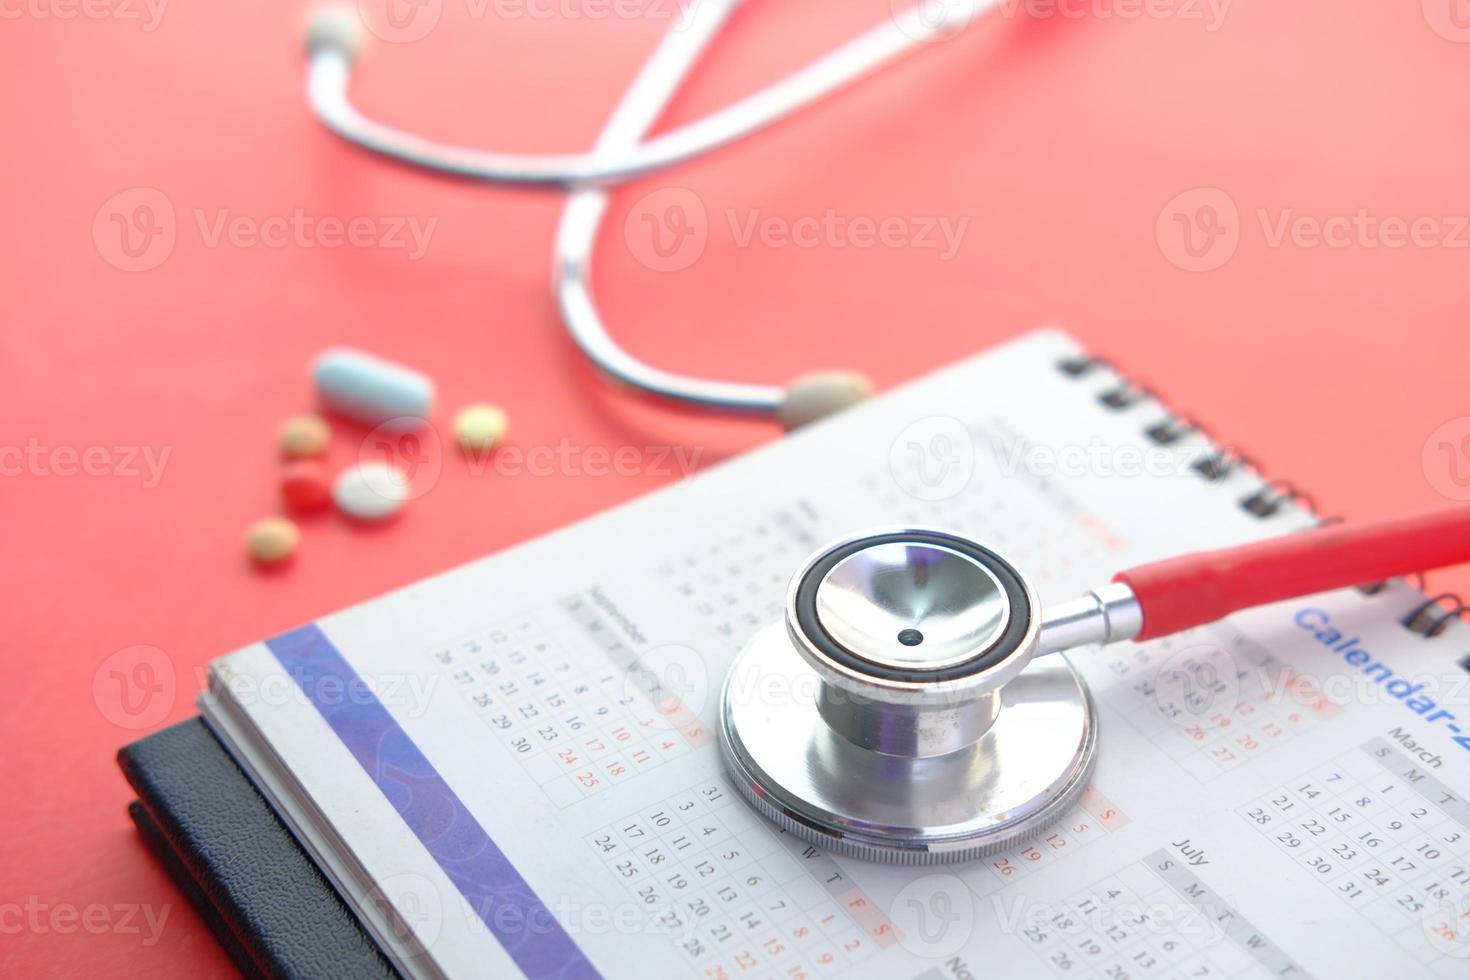 medische afspraak concept met stethoscoop en kalender op rode tafel foto